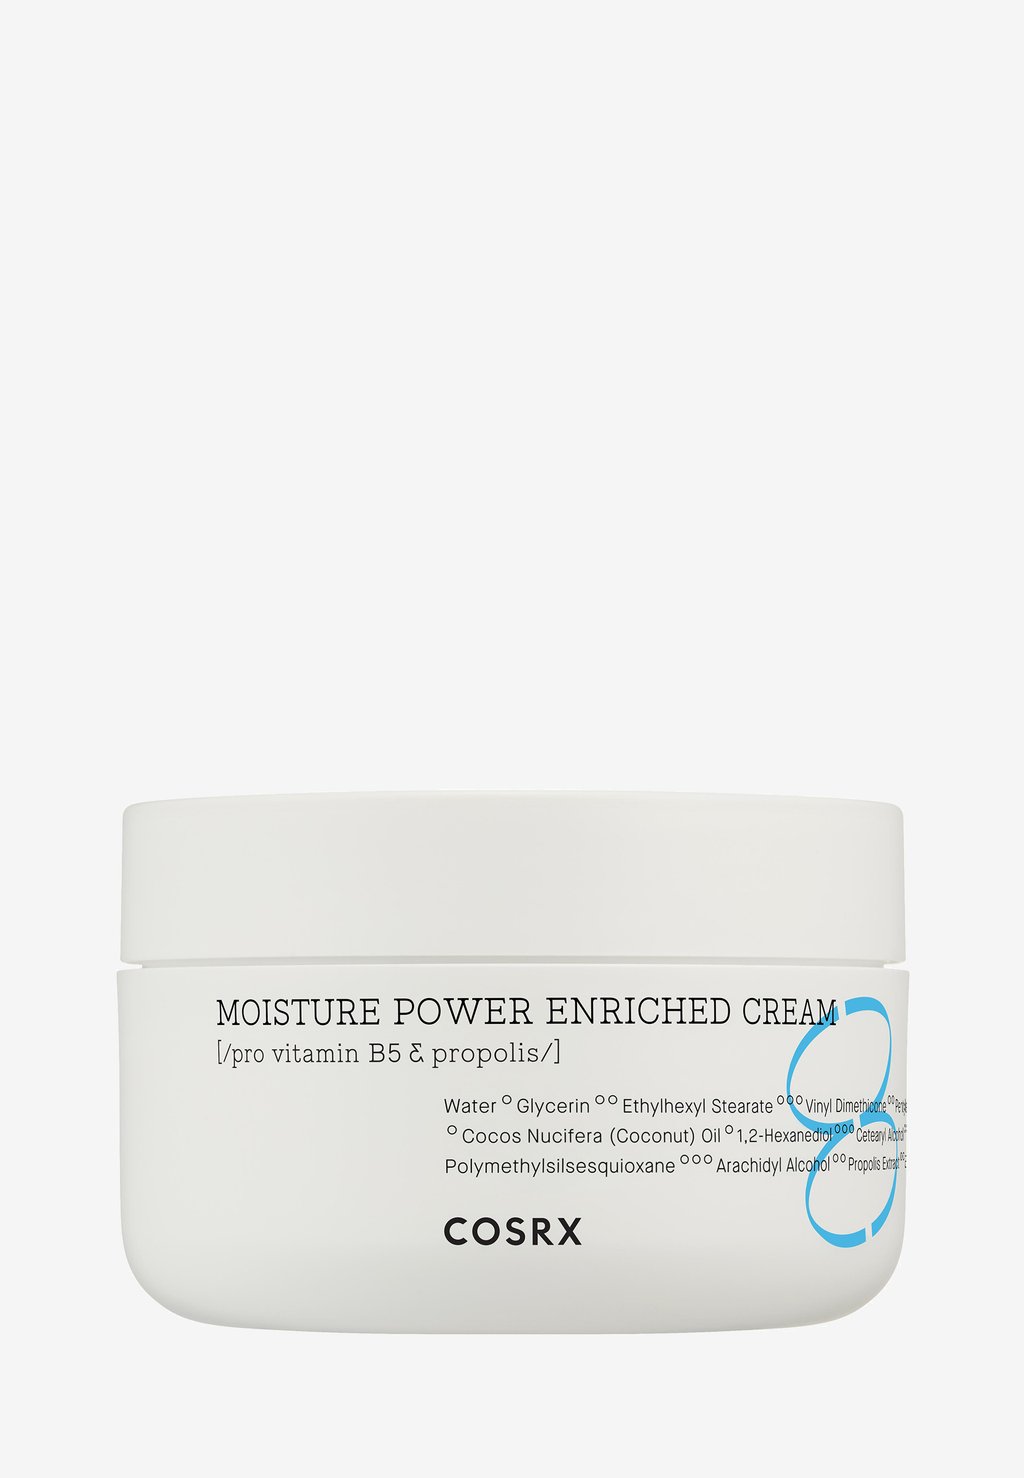 Дневной крем Moisture Power Enriched Cream COSRX